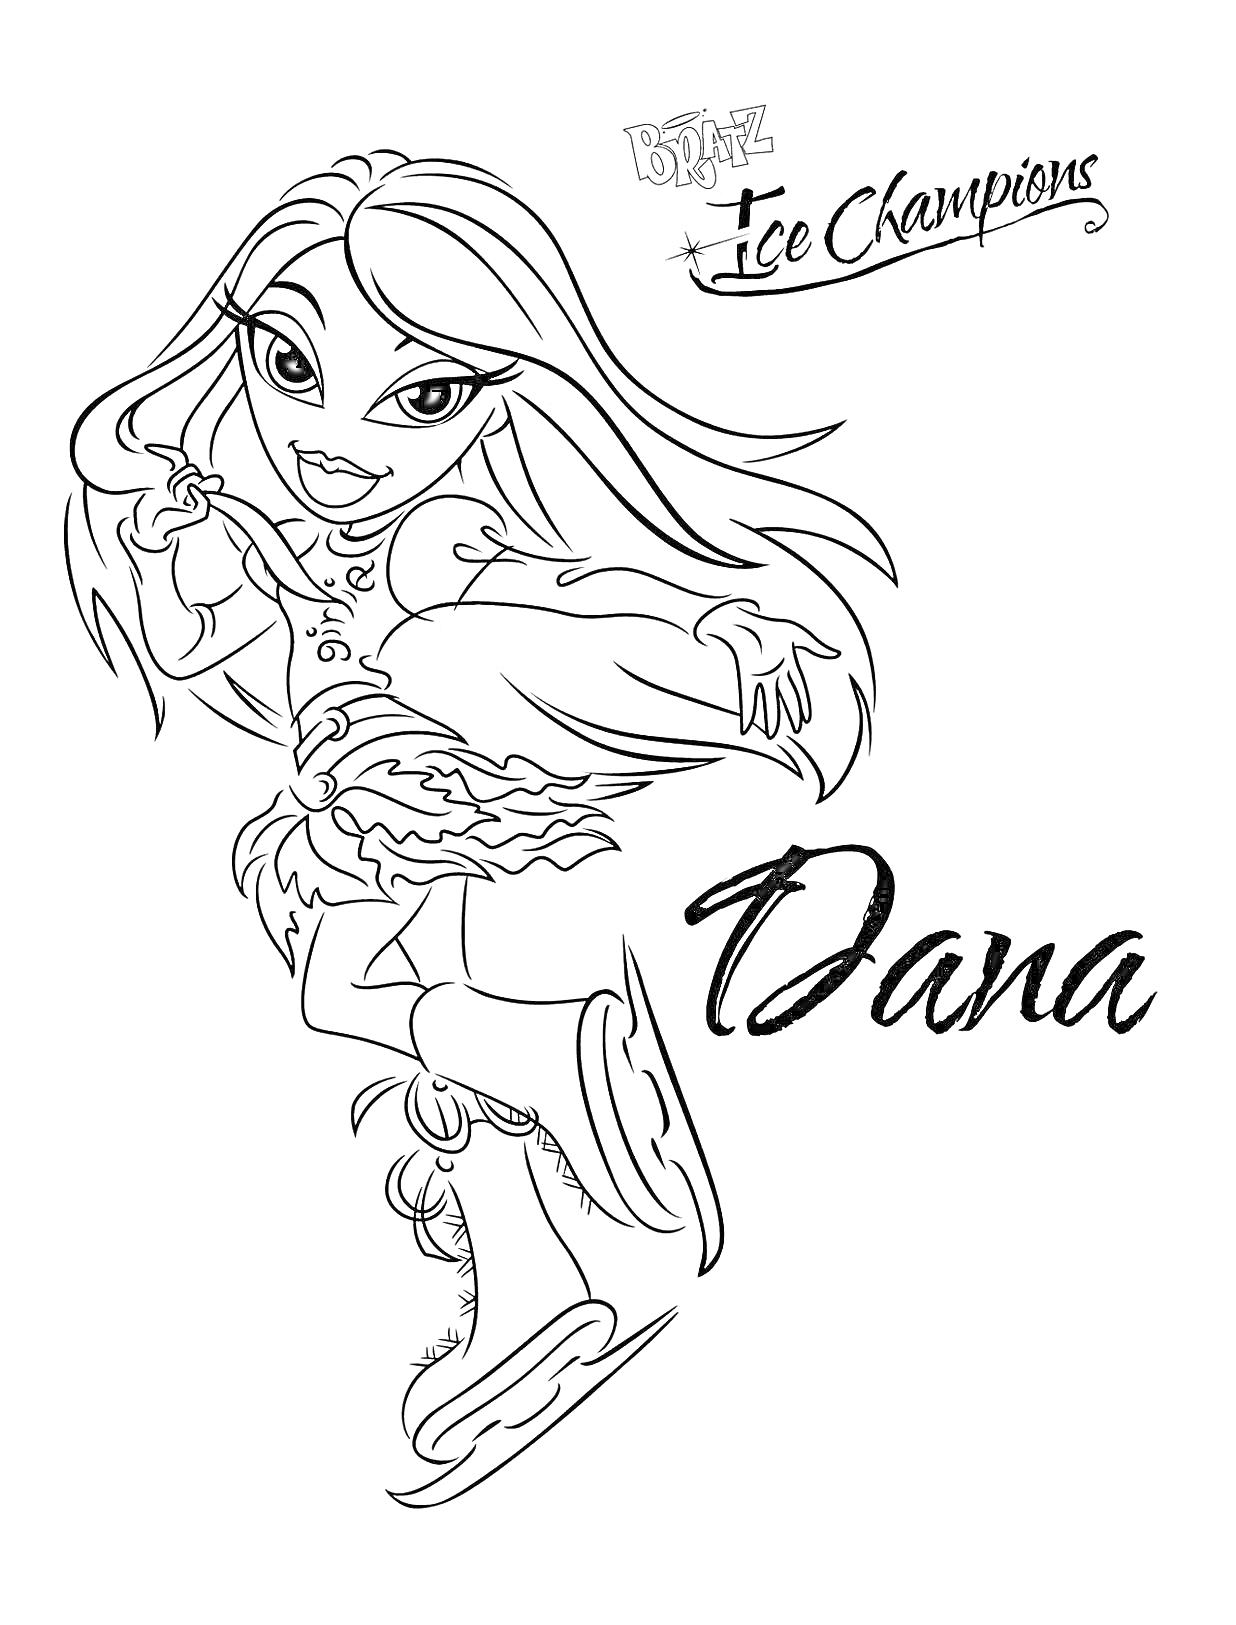 Раскраска Братц на льду - Дана, фигуристка в юбке и ботинках для фигурного катания